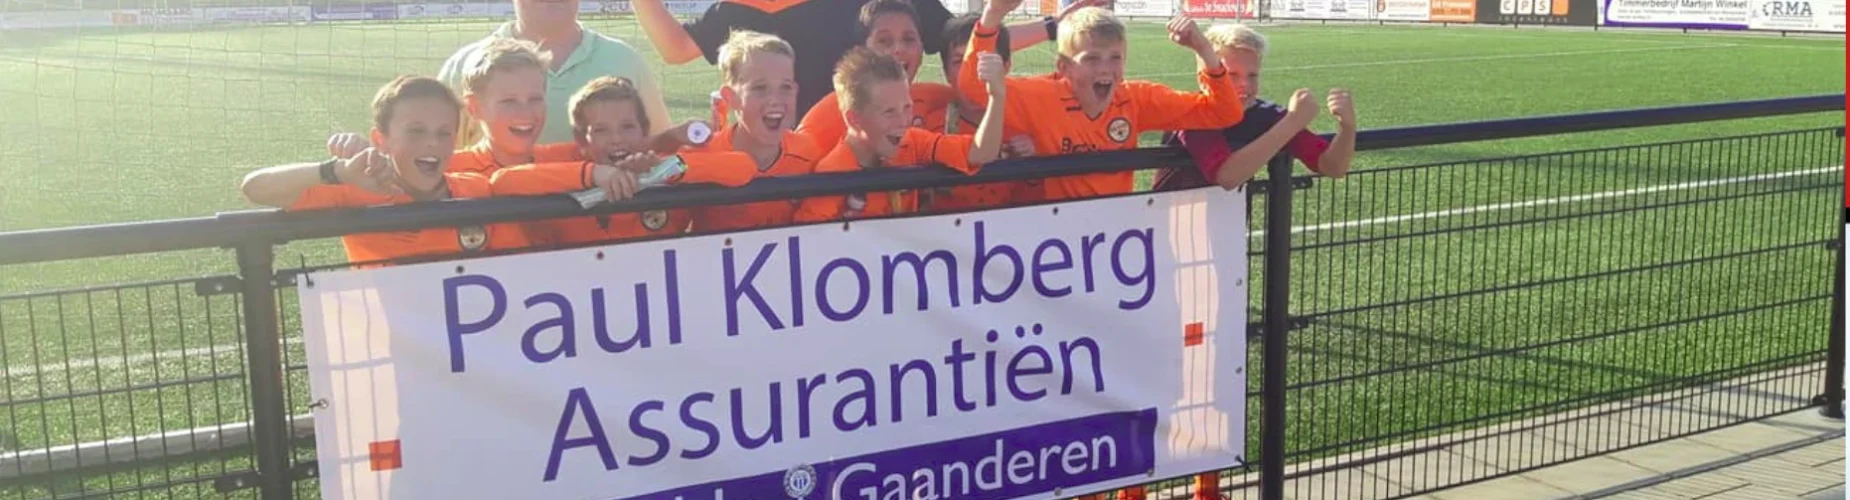 Banner - Paul Klomberg Jeugdtoernooi - VVG ’25 - Gaanderen